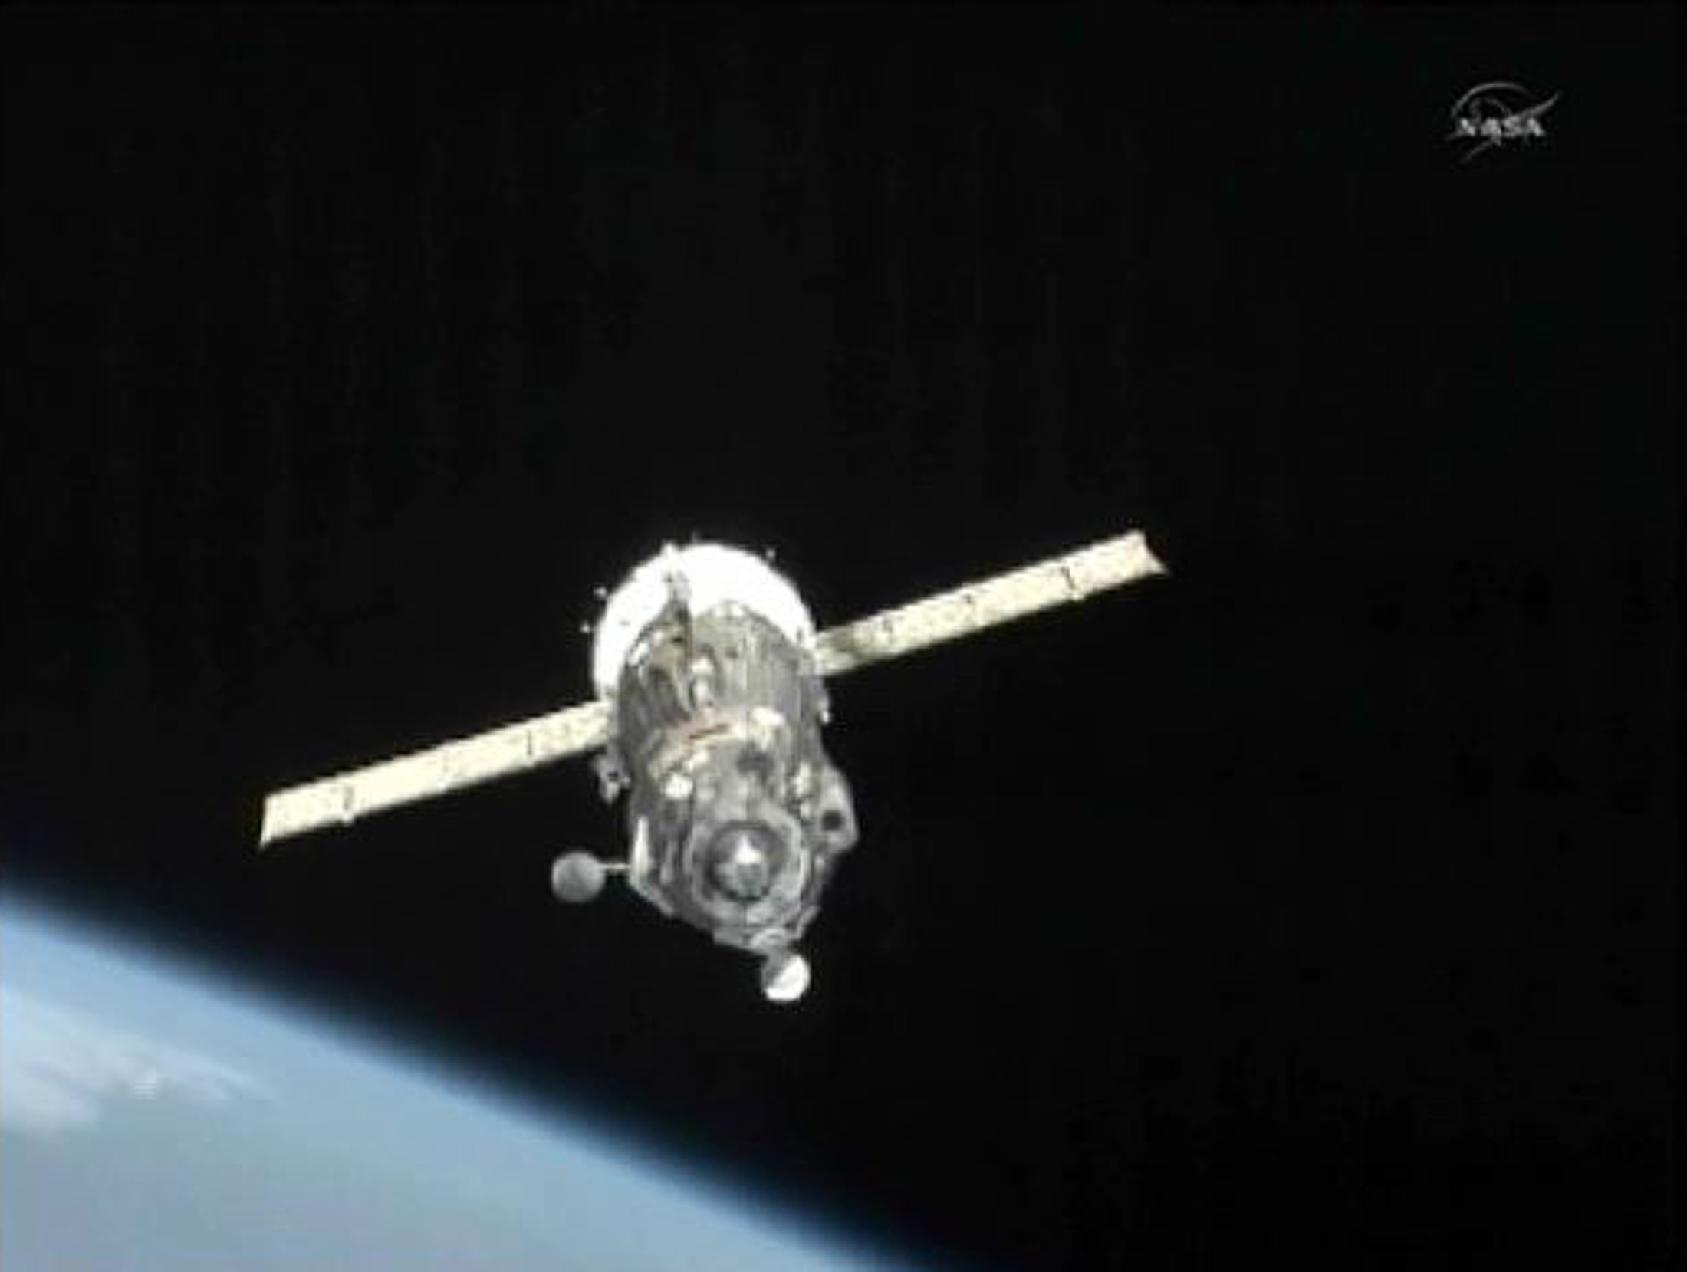 Αναβλήθηκε η πρόσδεση του Σογιούζ στον ISS